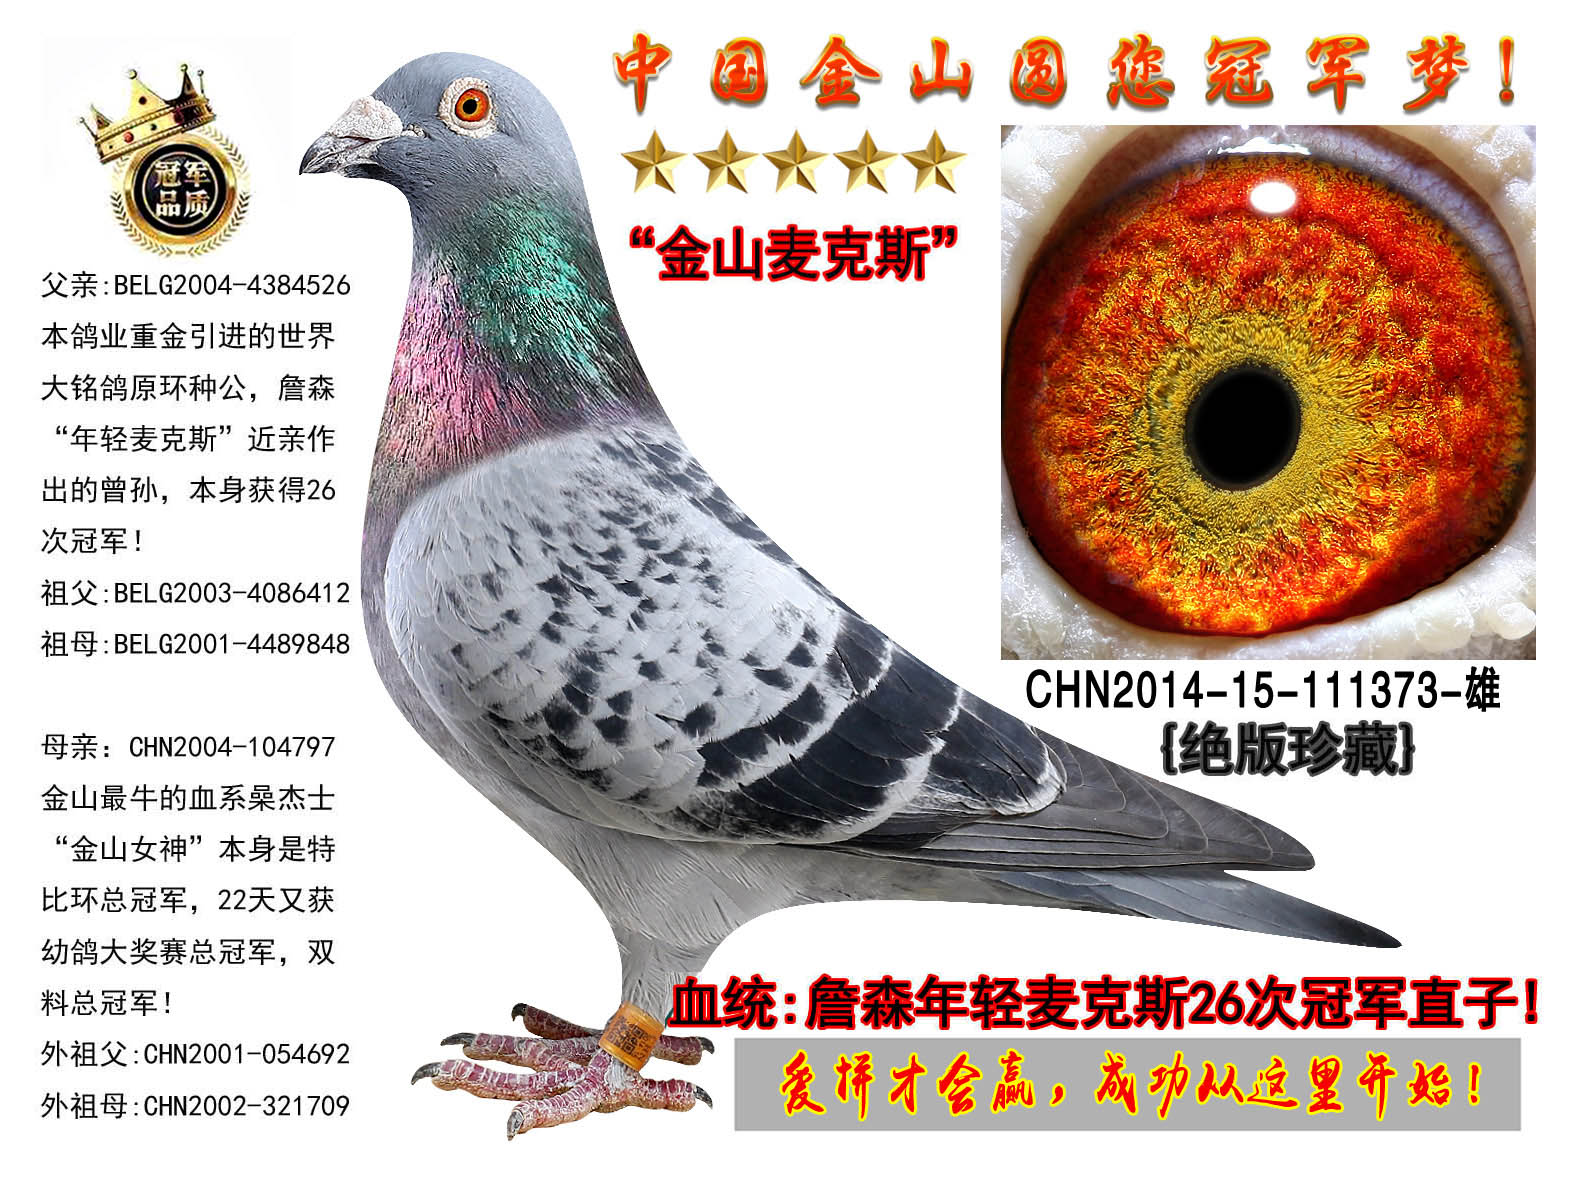 中国金山鸽业在线拍鸽